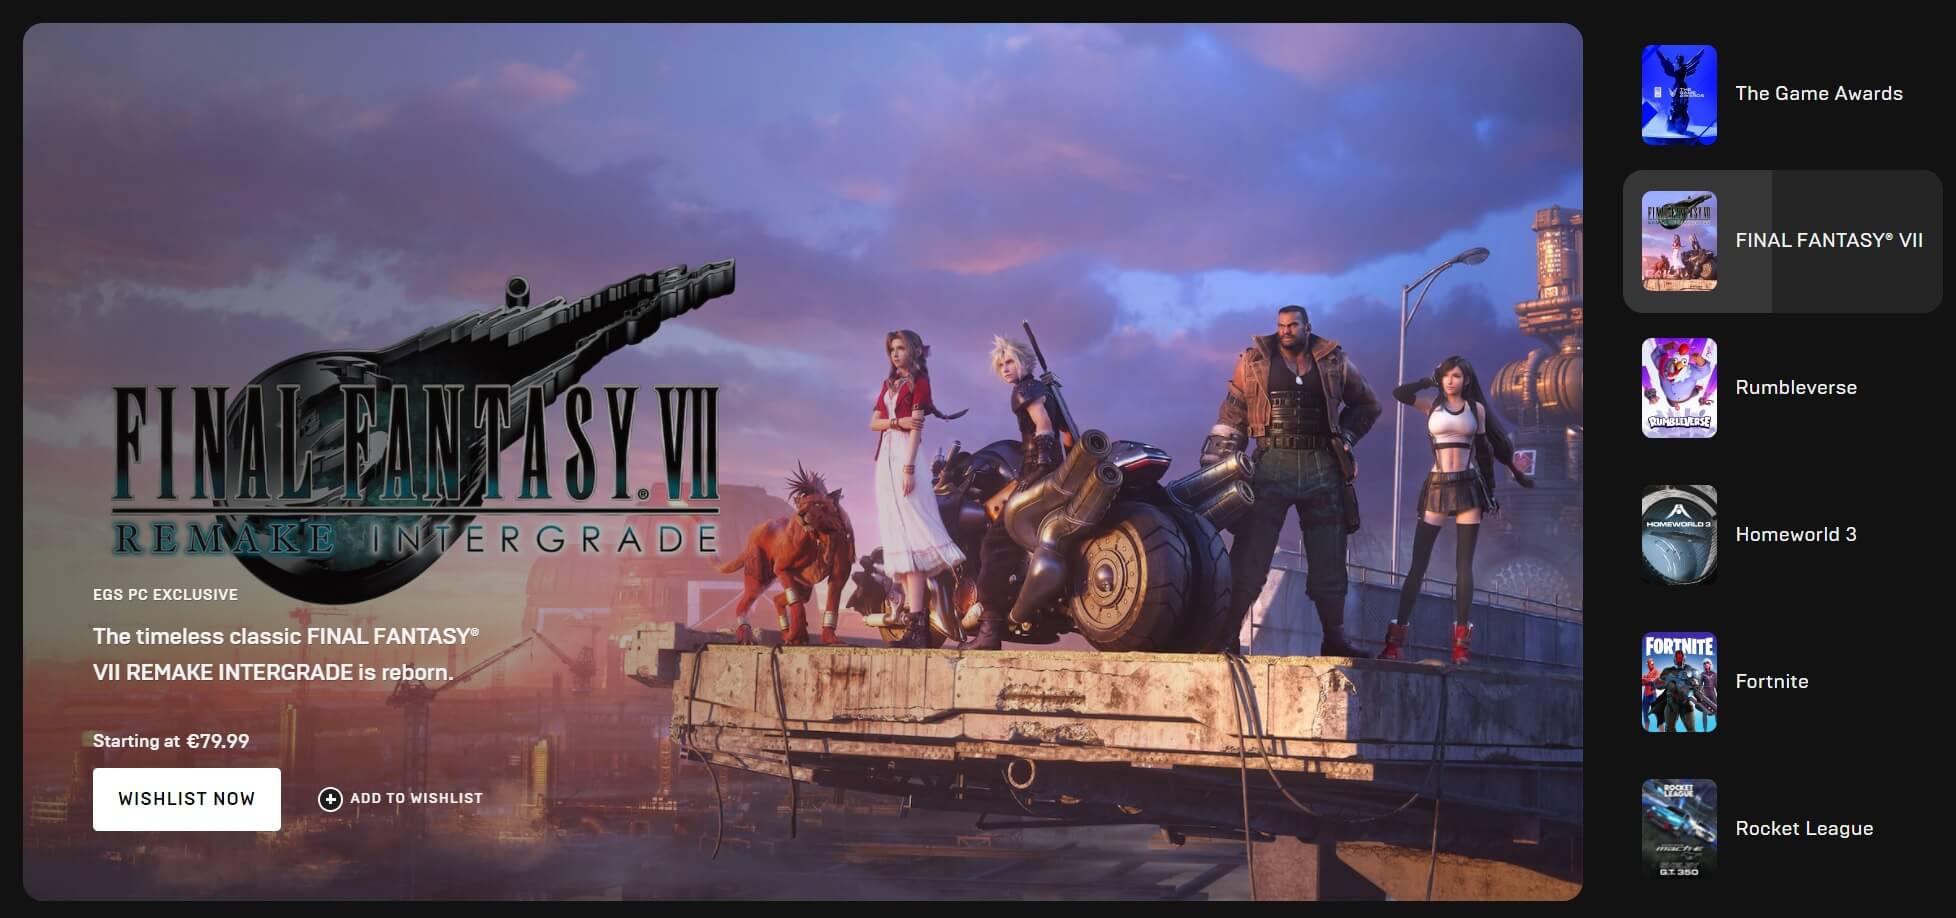 Final Fantasy VII Remake llega oficialmente para PC, conoce sus requisitos  mínimos y recomendados, Videojuegos